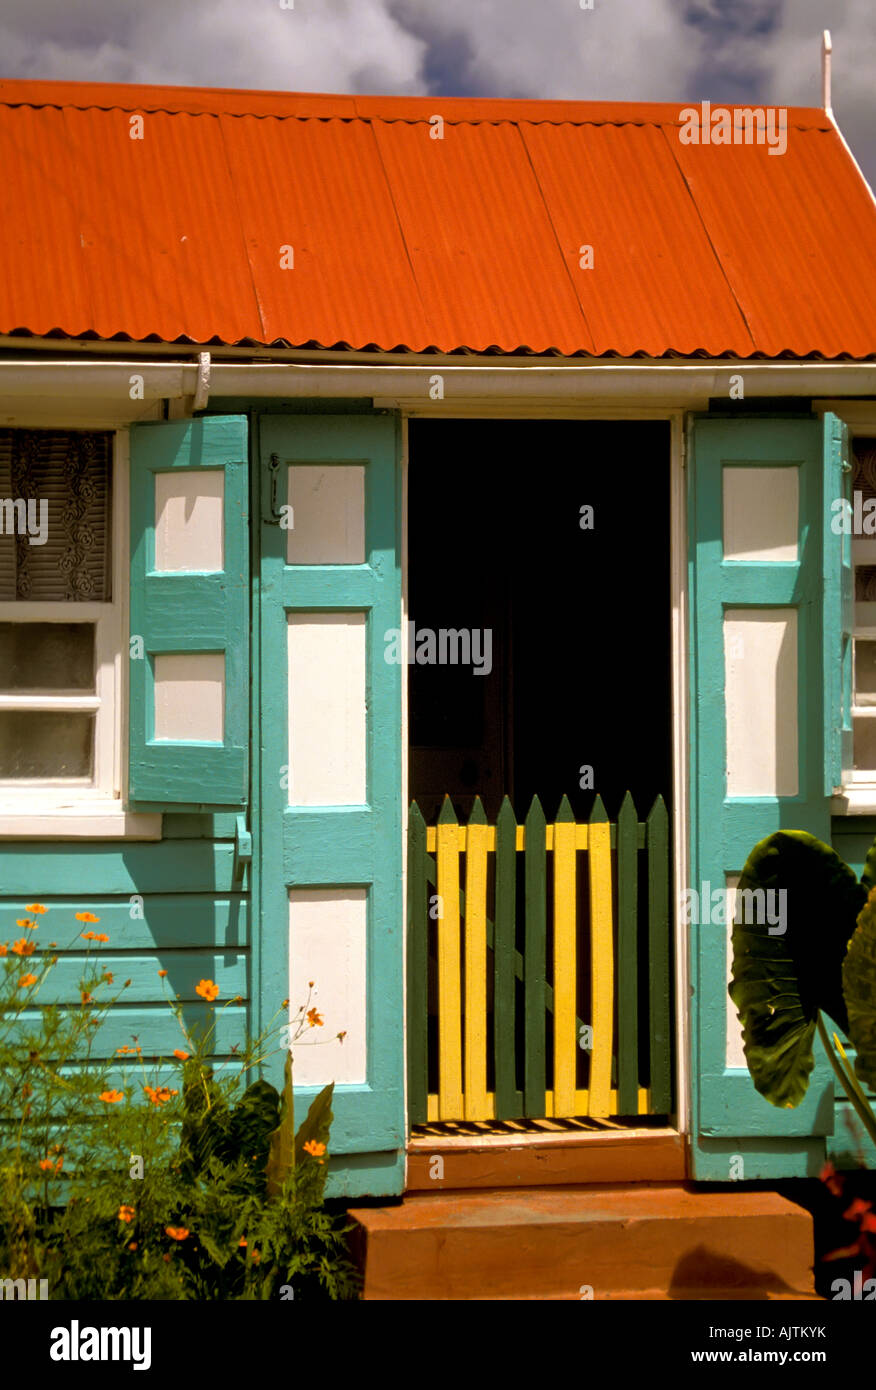 Insel Nevis St. Kitts und Nevis Karibik Insel, bunten traditionellen Hause rot grün weiß Gebäudearchitektur Charlestown Stockfoto